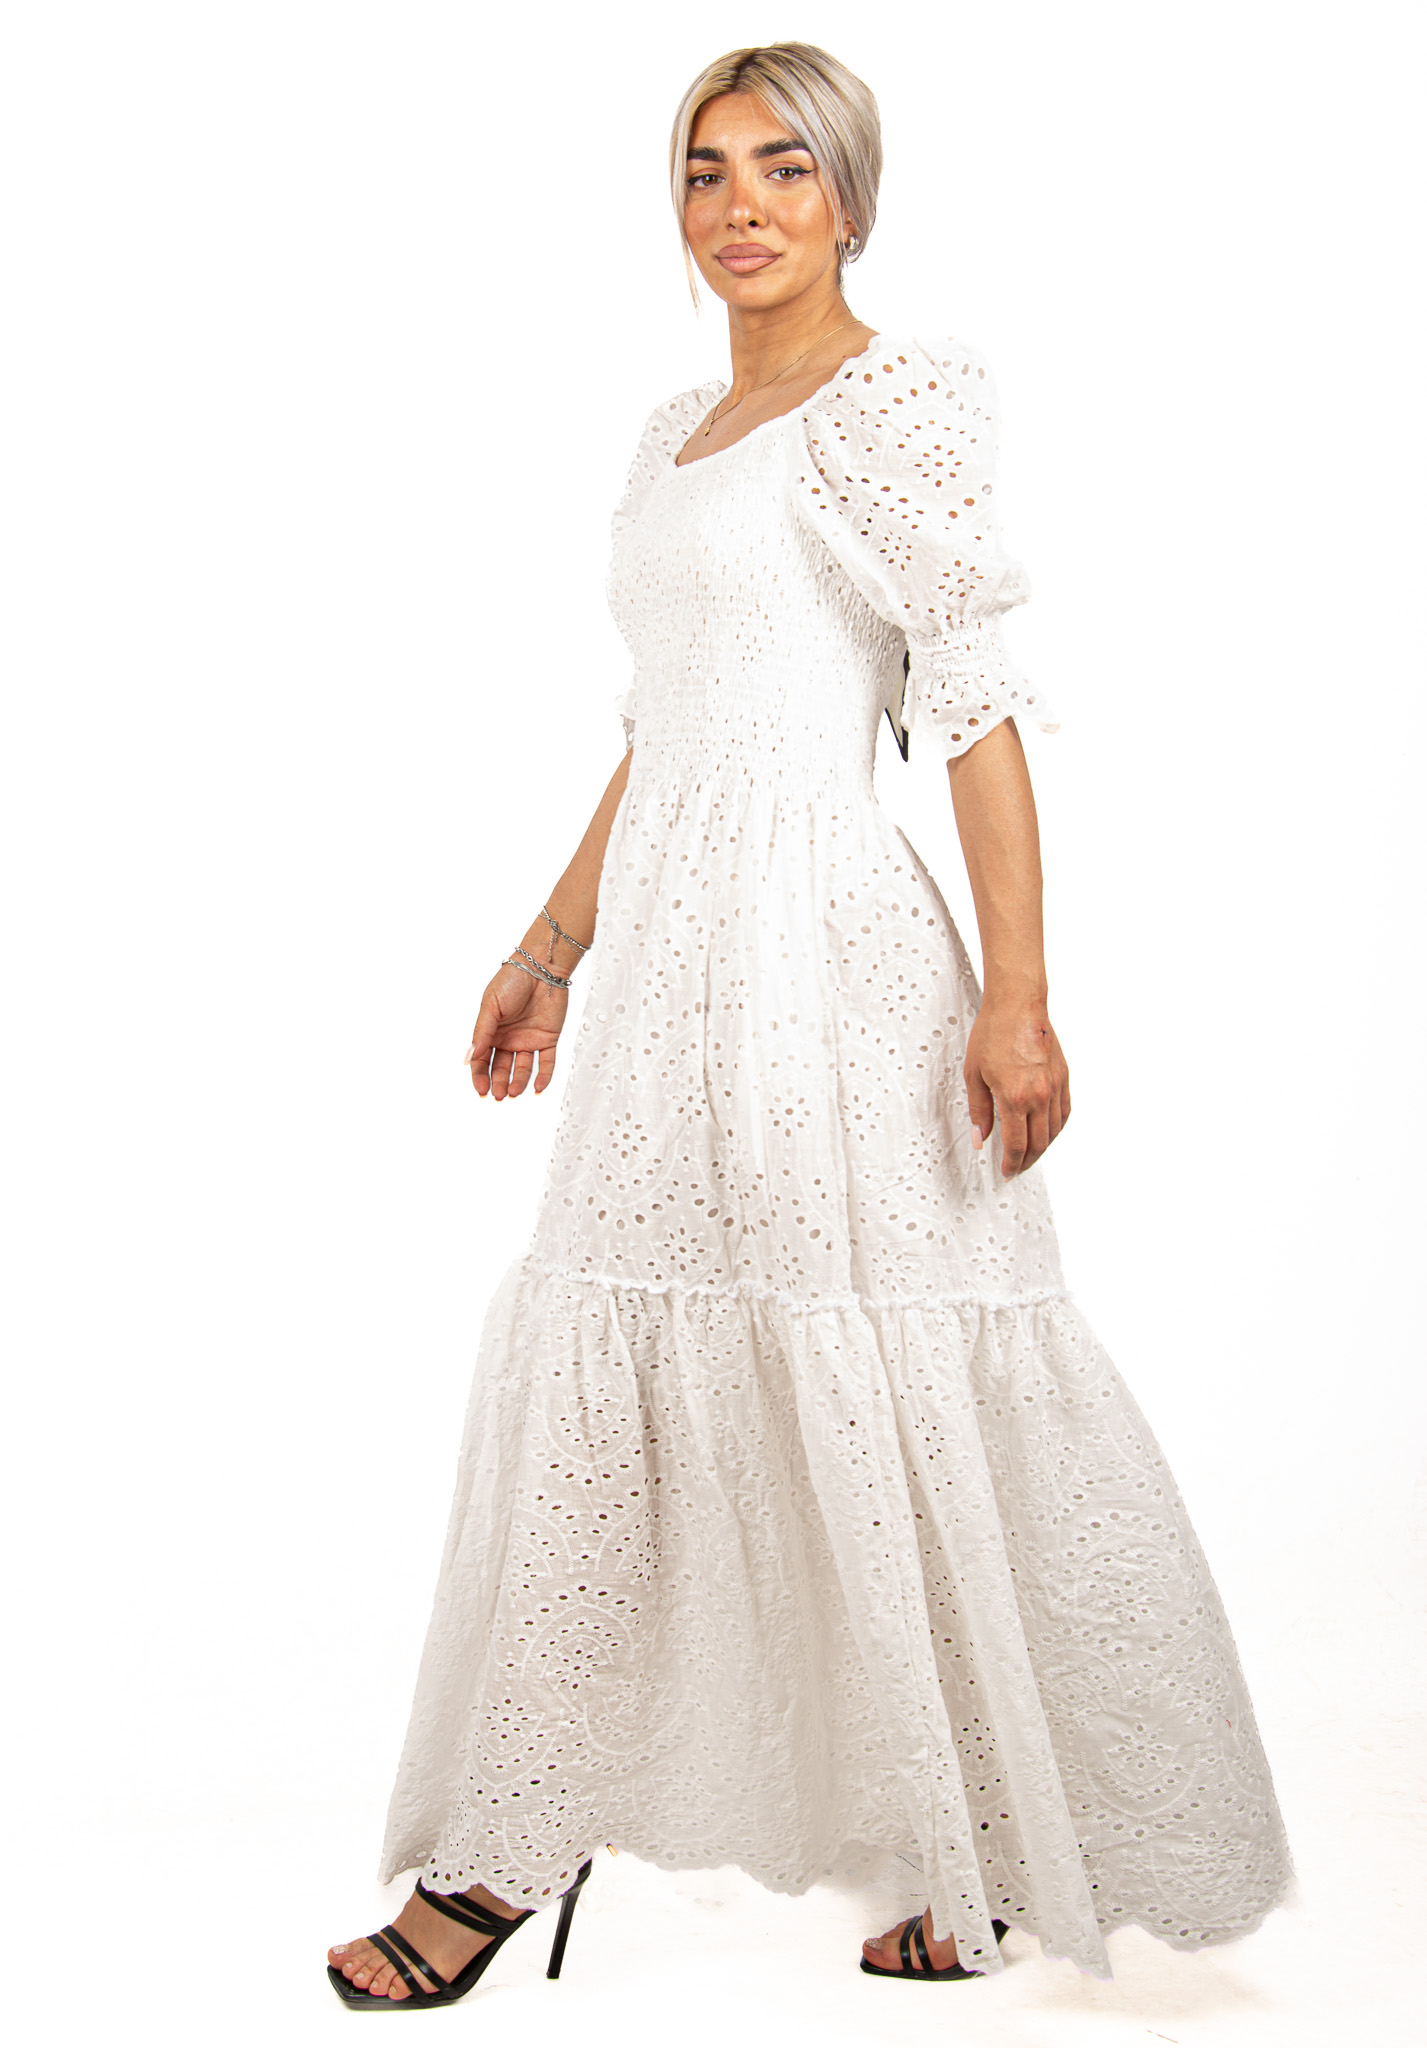 Φόρεμα Κυπούρ Δαντέλα Λευκό | EllenBoutique